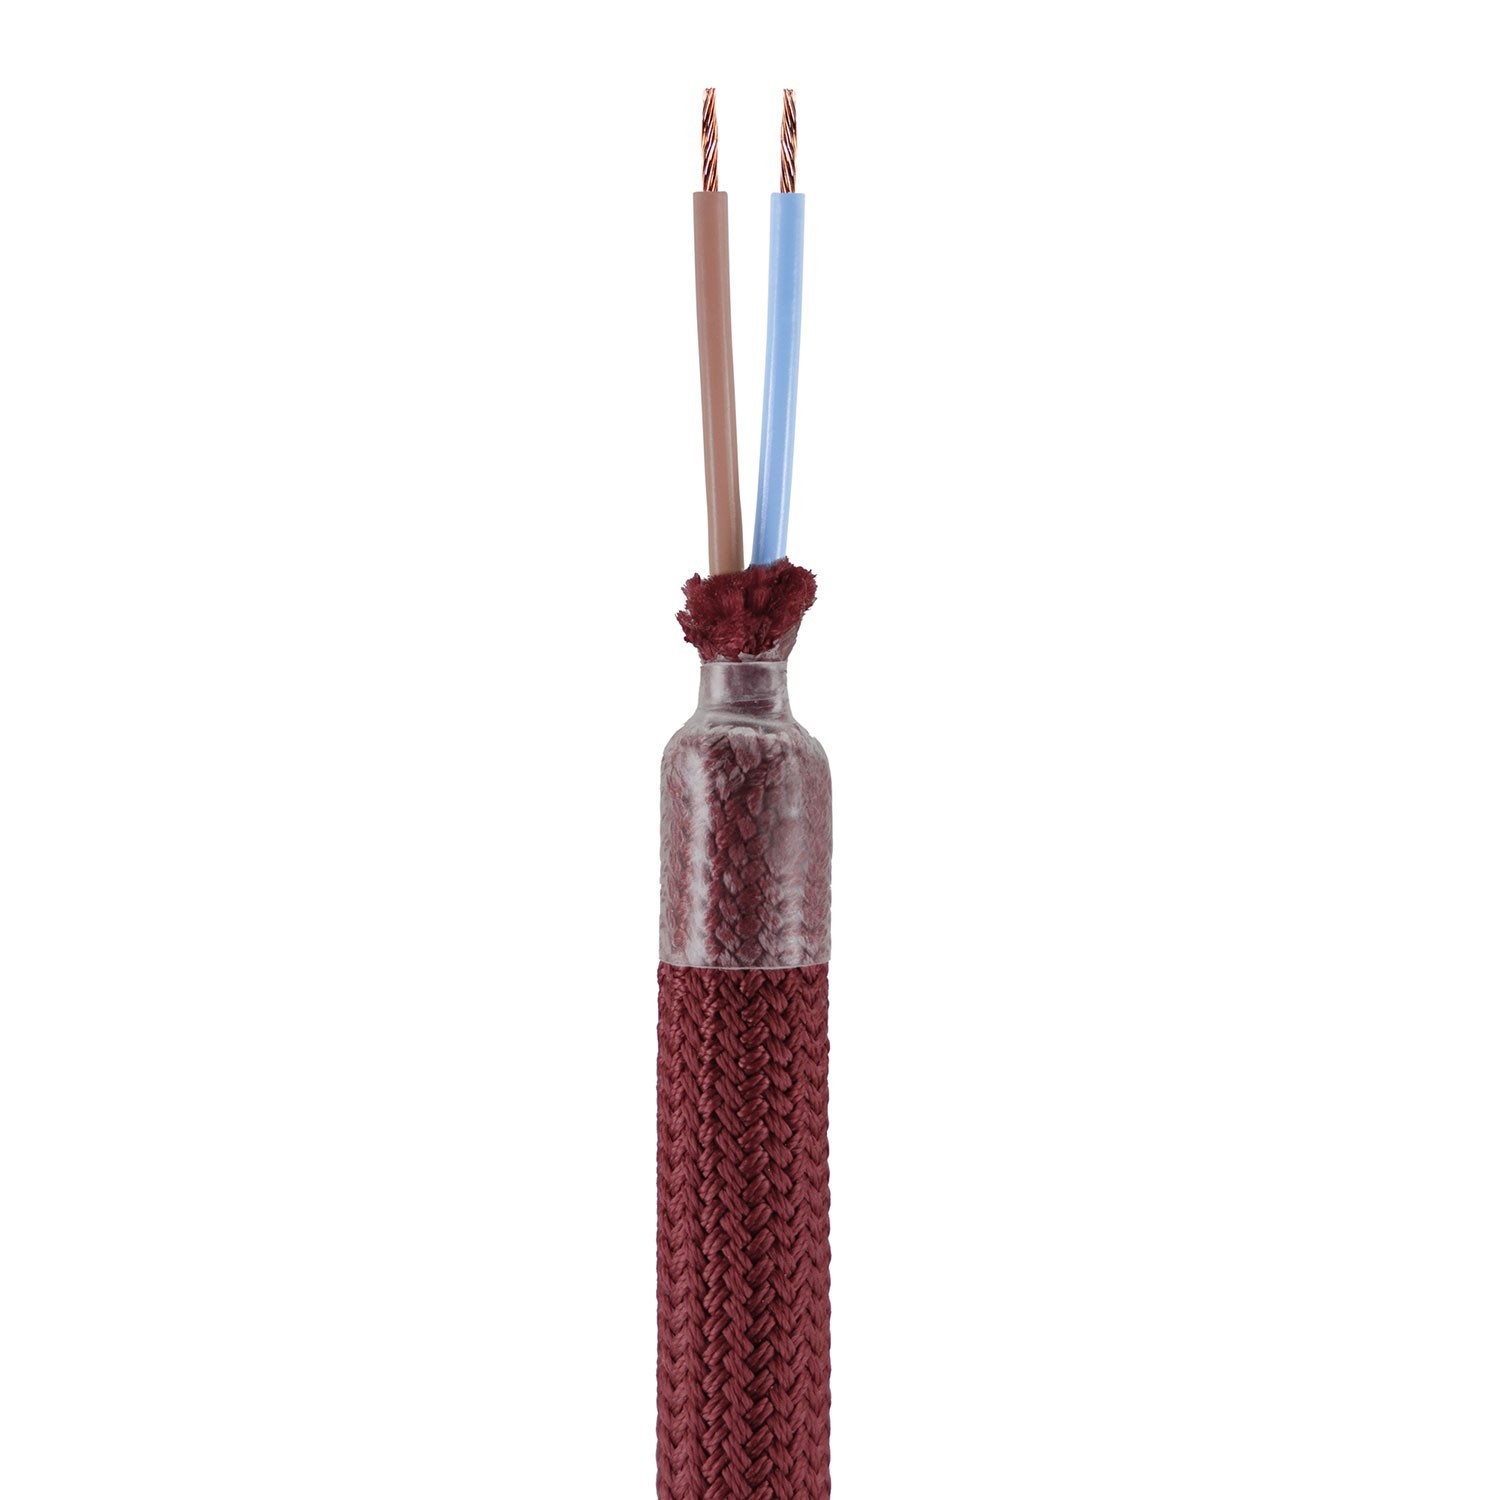 Kit Creative Flex flexibele buis bekleed met burgundy kleurige RM19 stof met metalen eindstukken